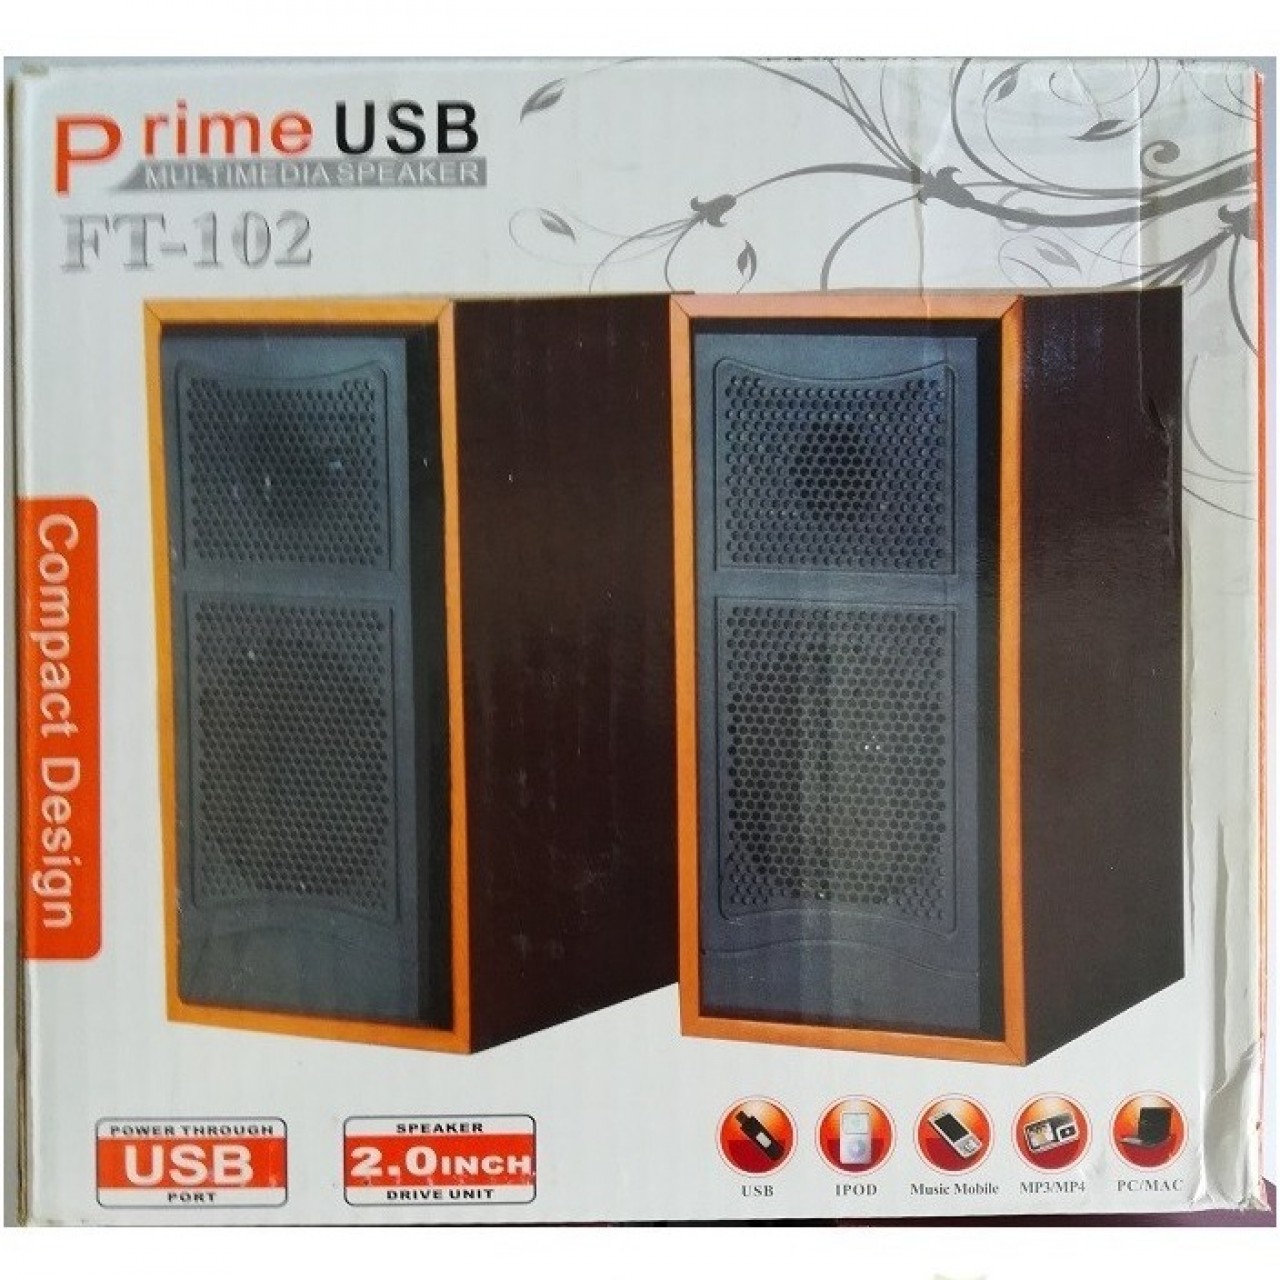 FT 102 Portable Multimedia Speakers for Laptops & Mobiles - USB Power